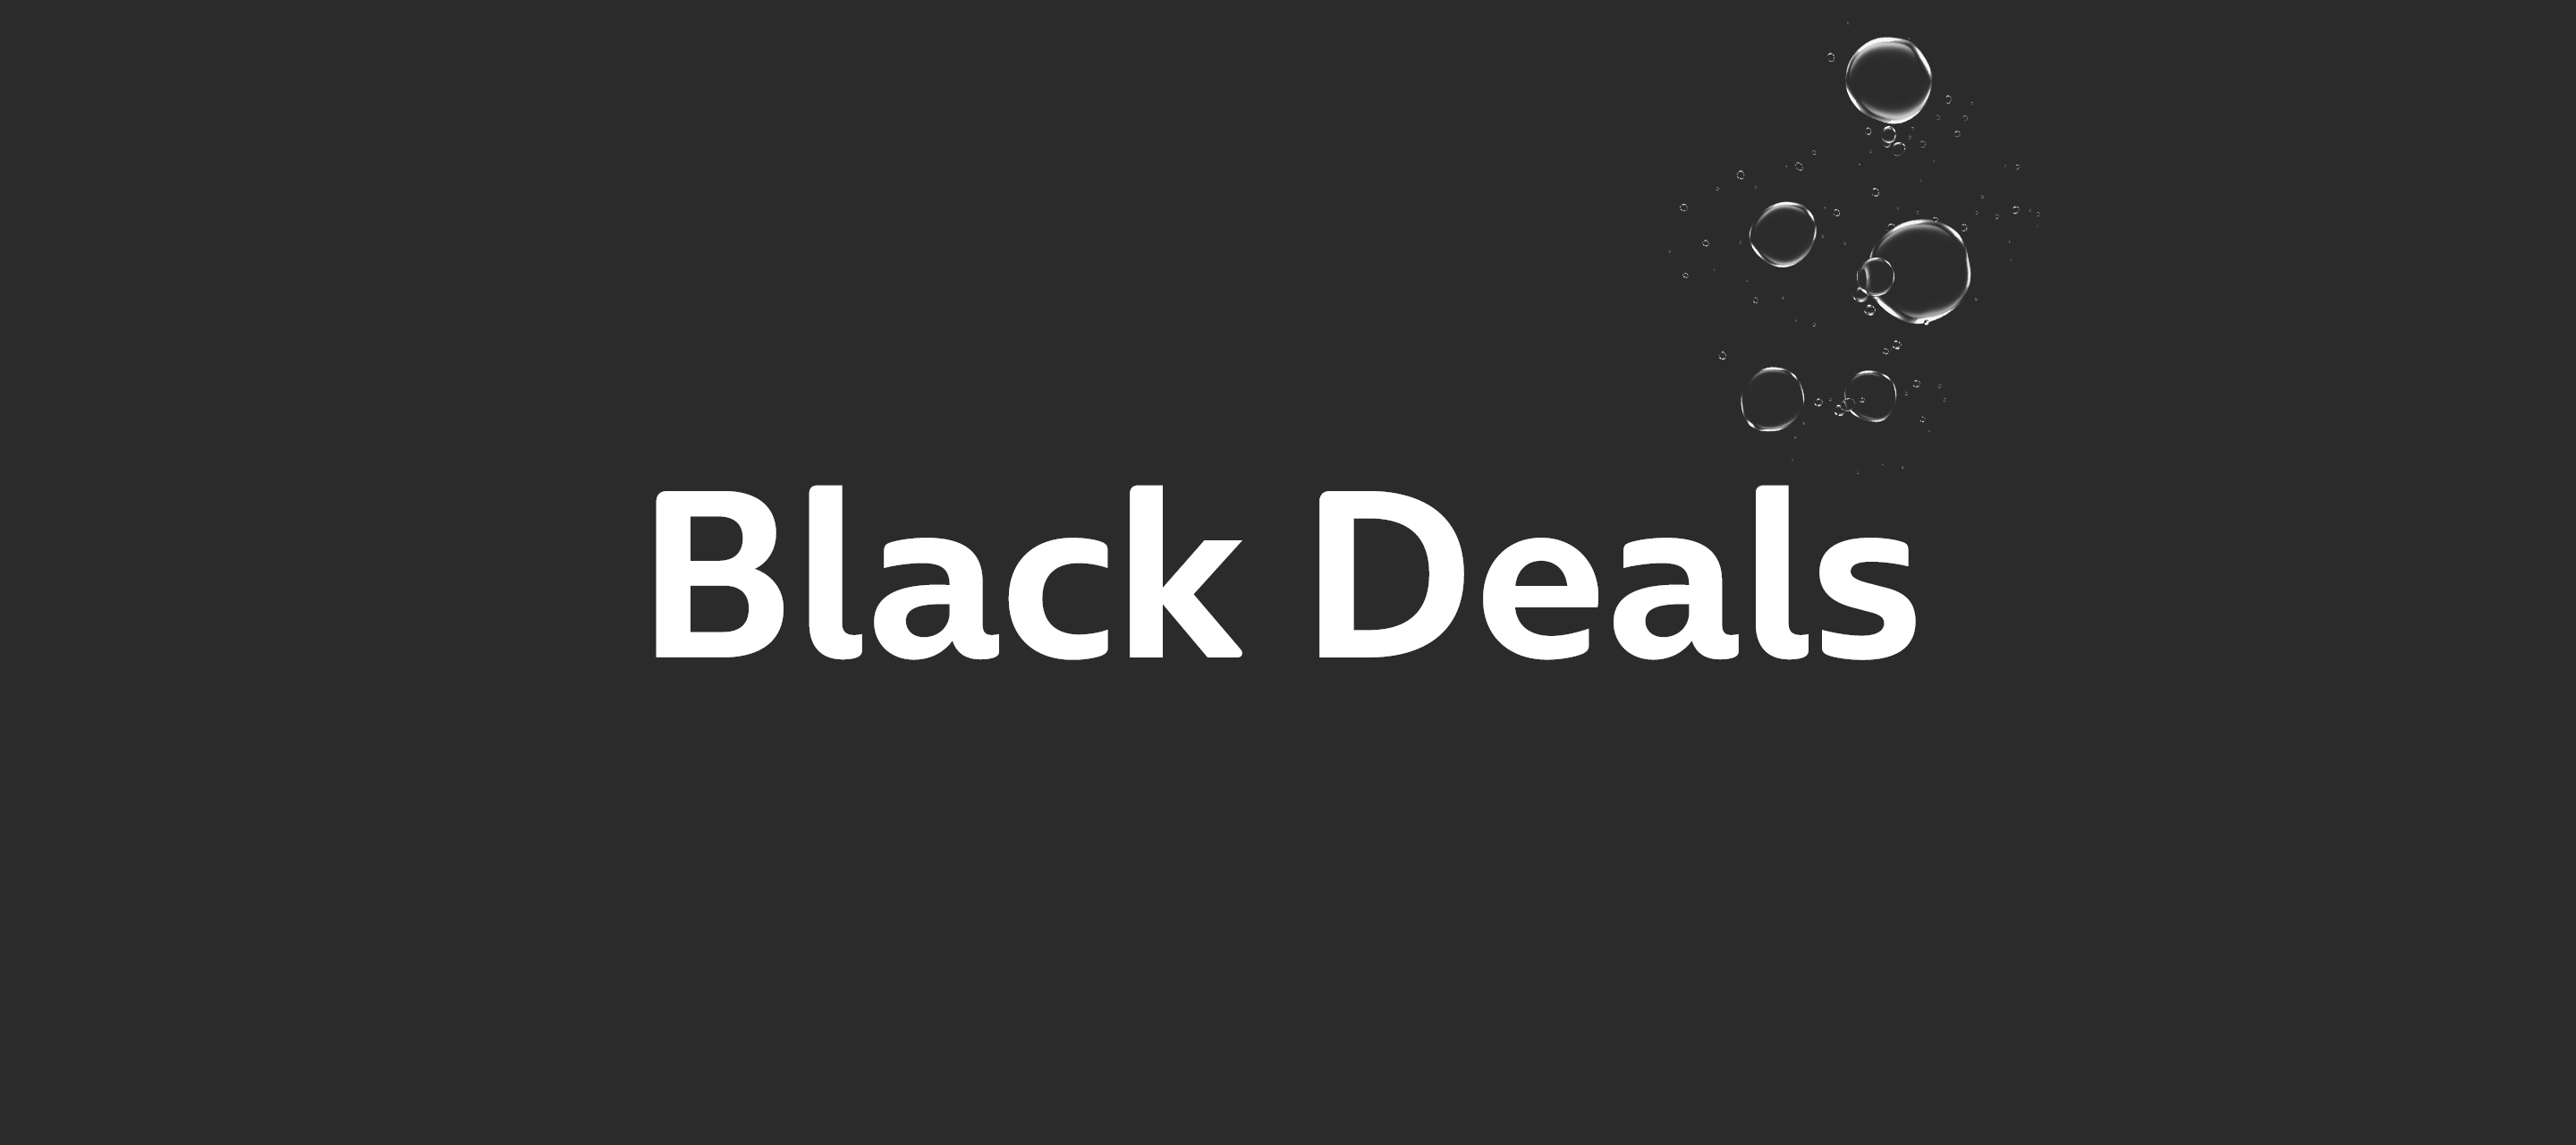 Black Deals 2023 bei O₂ - Tarife, Smartphones, Gadgets und mehr pünktlich zur Black Week